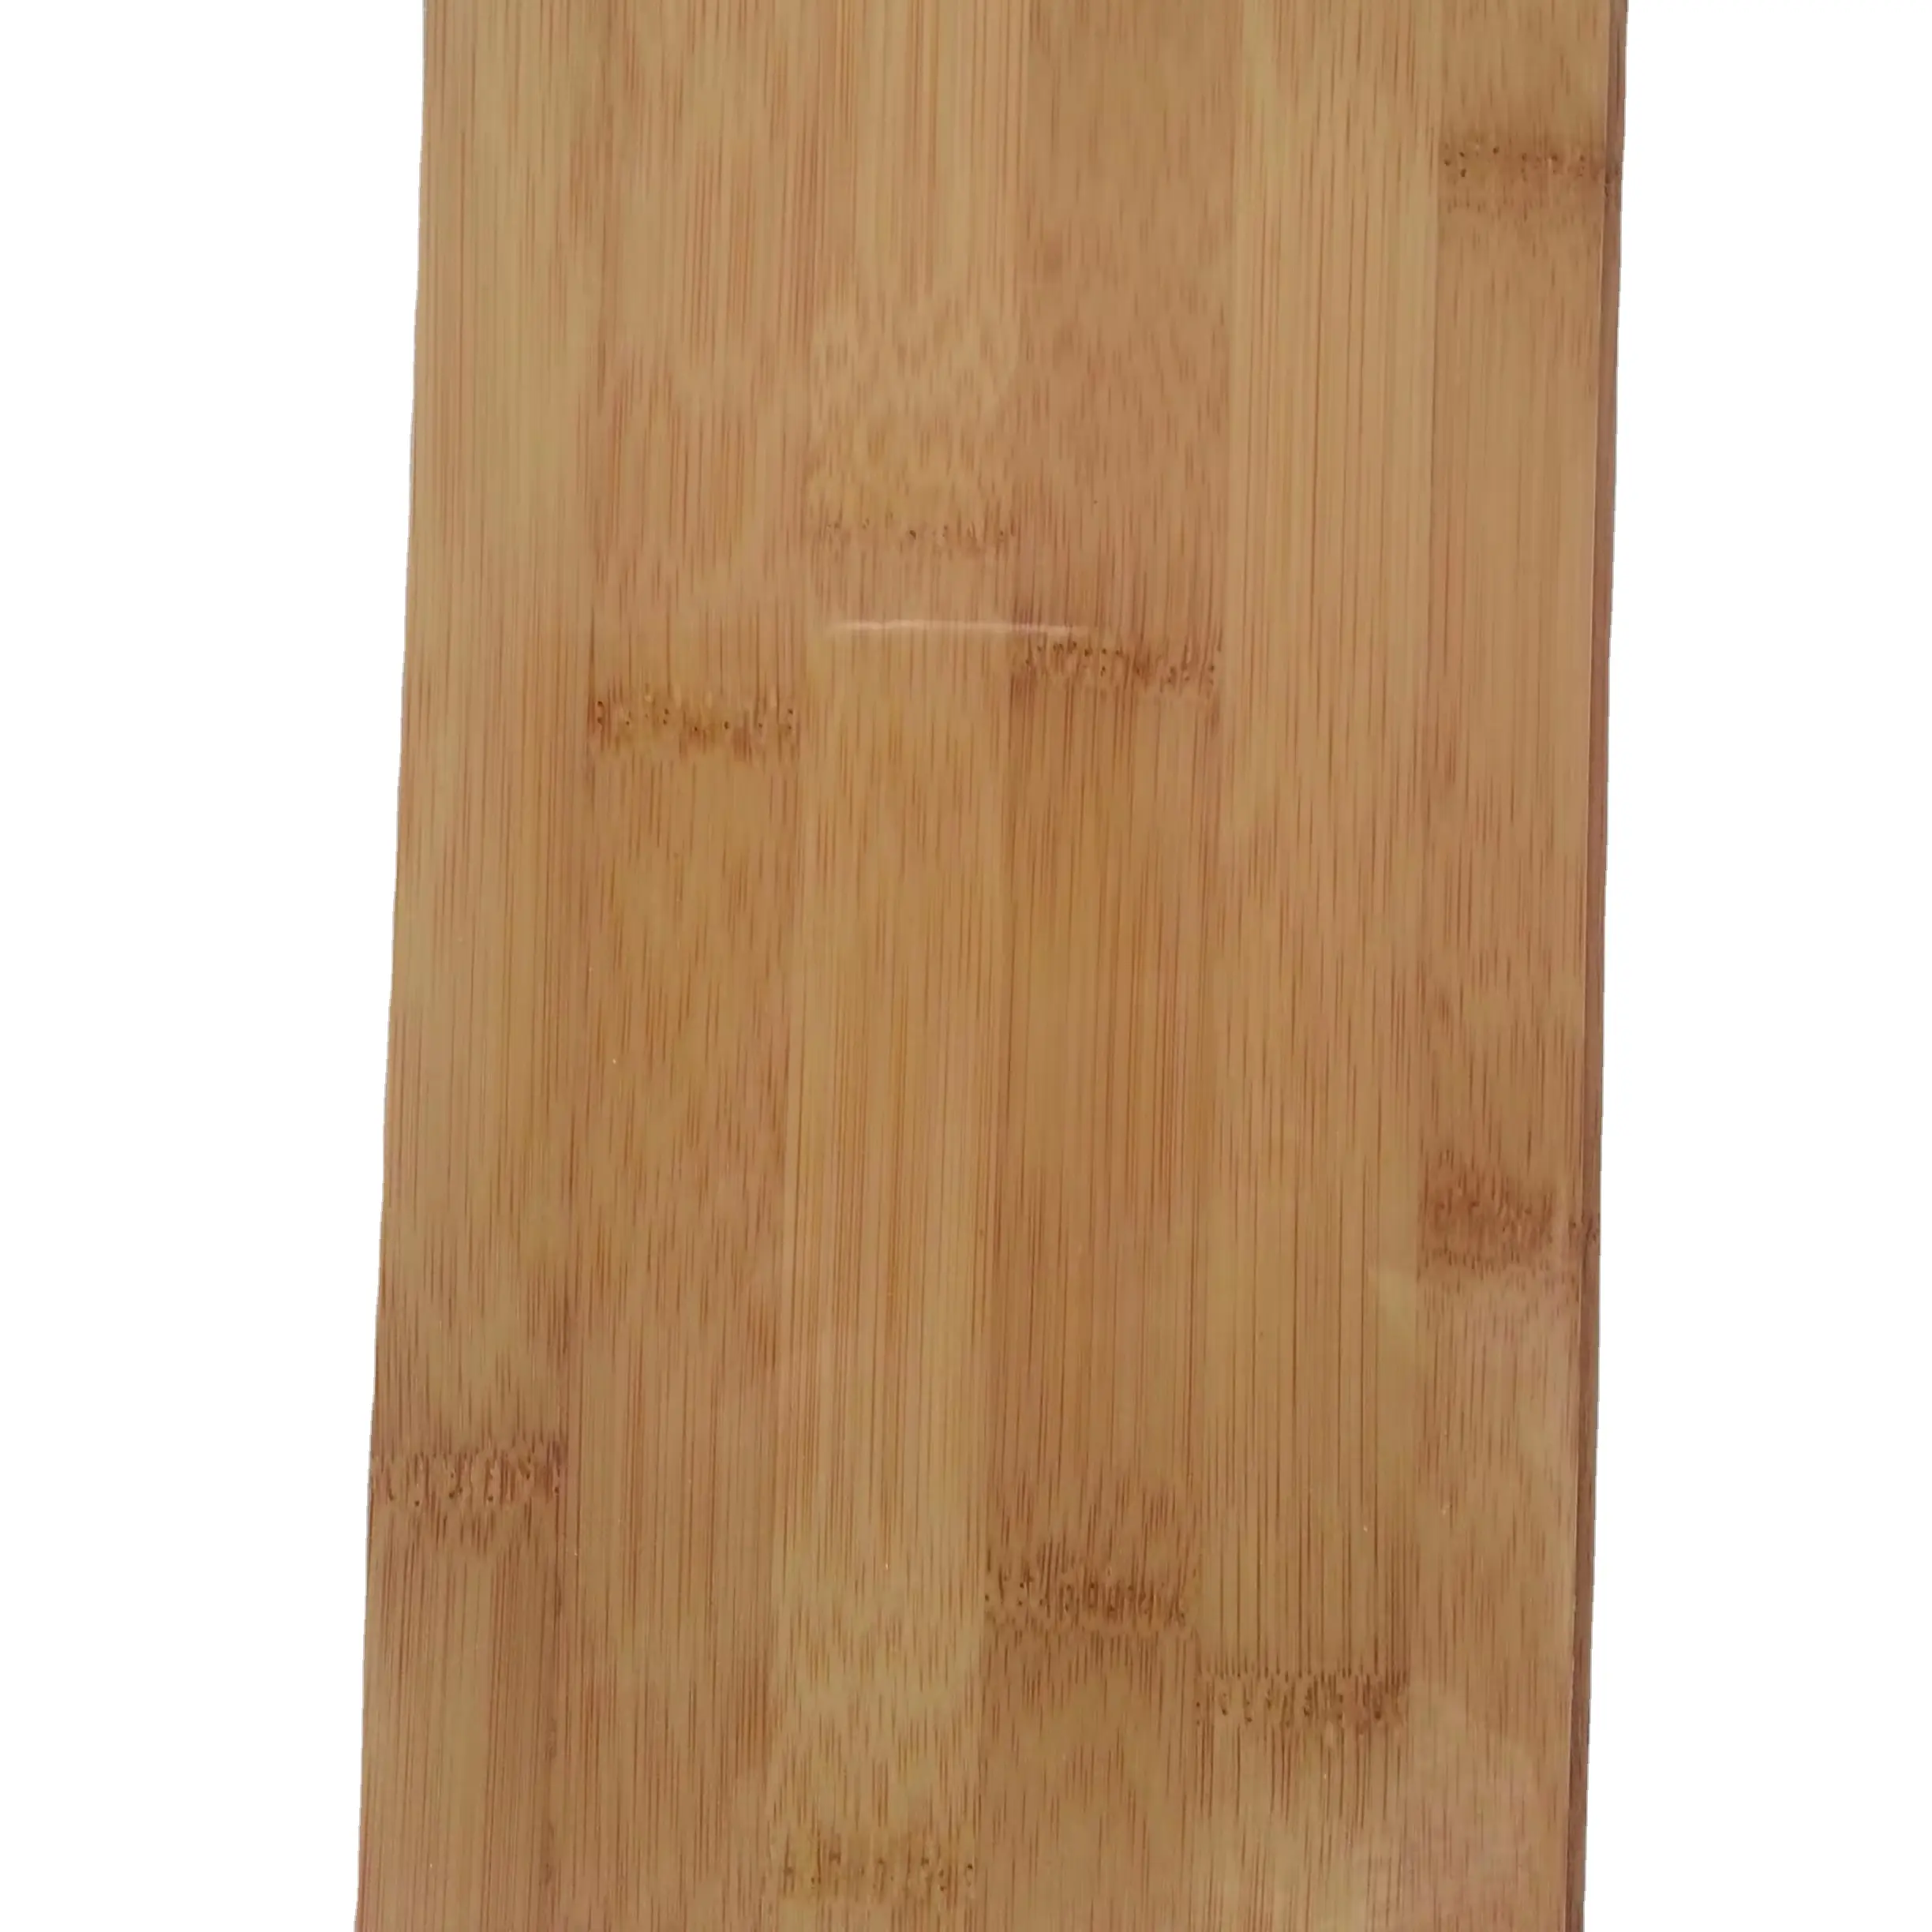 10mm diskon besar stok pabrik lantai bambu horizontal berkarbonisasi lantai dalam ruangan murah